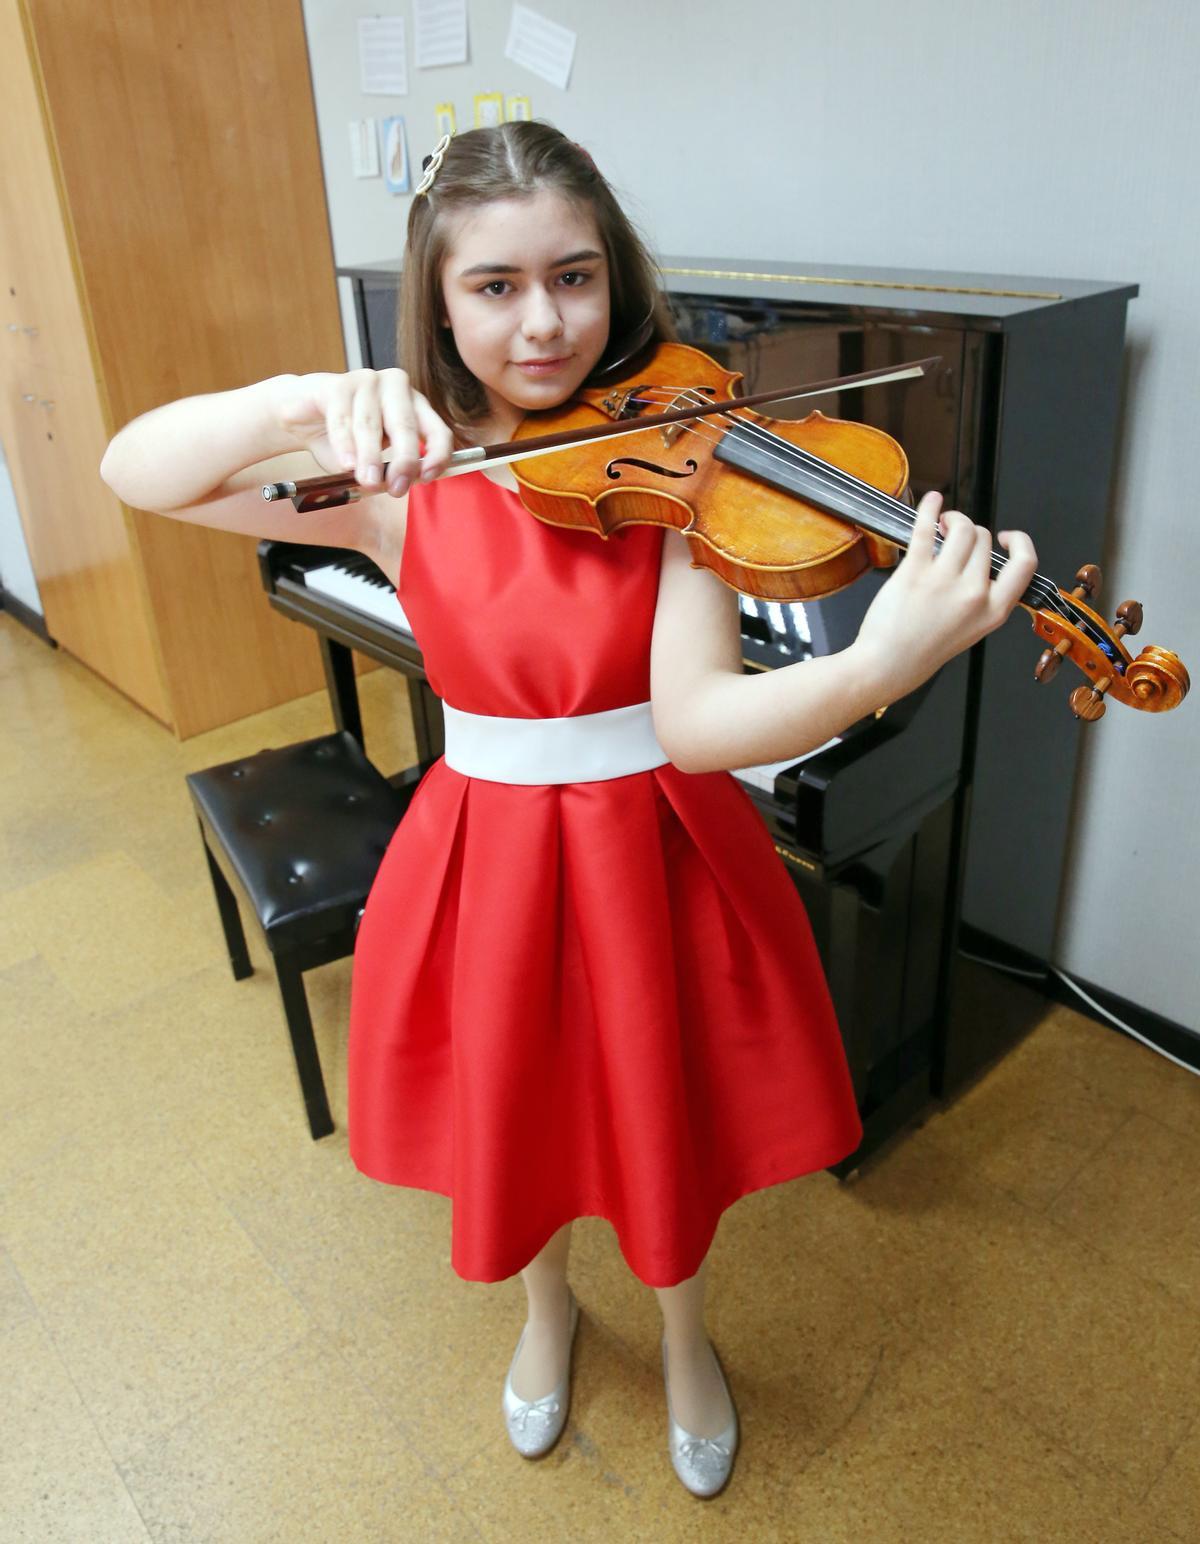 La joven violinista madrileña.